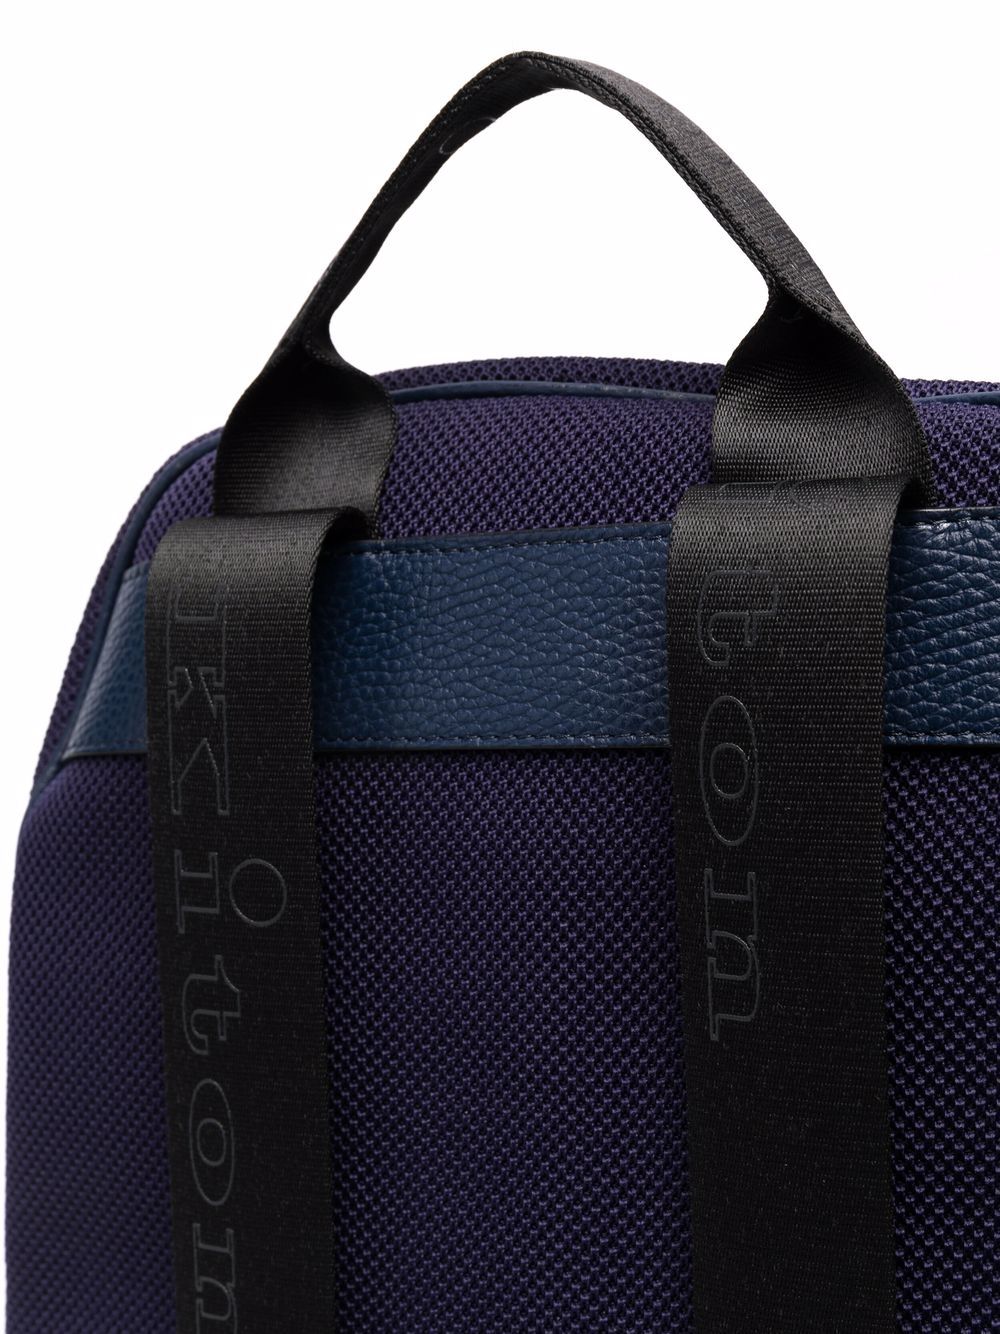 фото Kiton рюкзак с вышитым логотипом